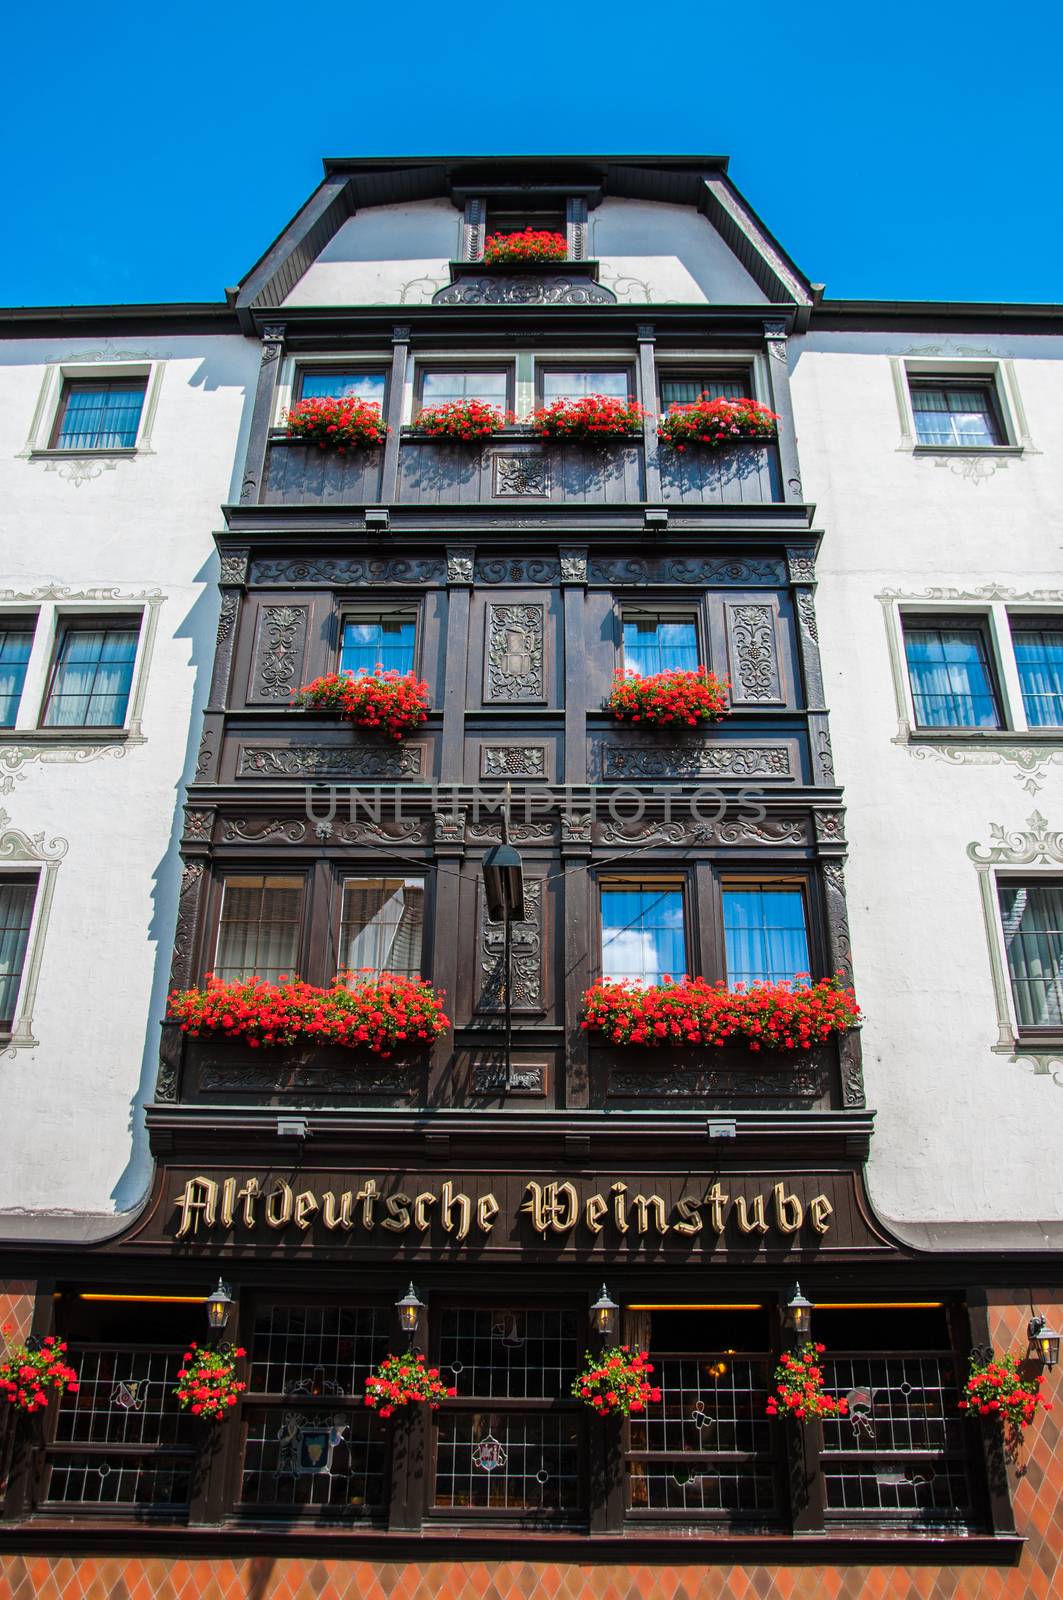 Balkons with flowers in Hotel Altdeutsche Weinstube, Ruedesheim, Rheinland-Pfalz, Germany